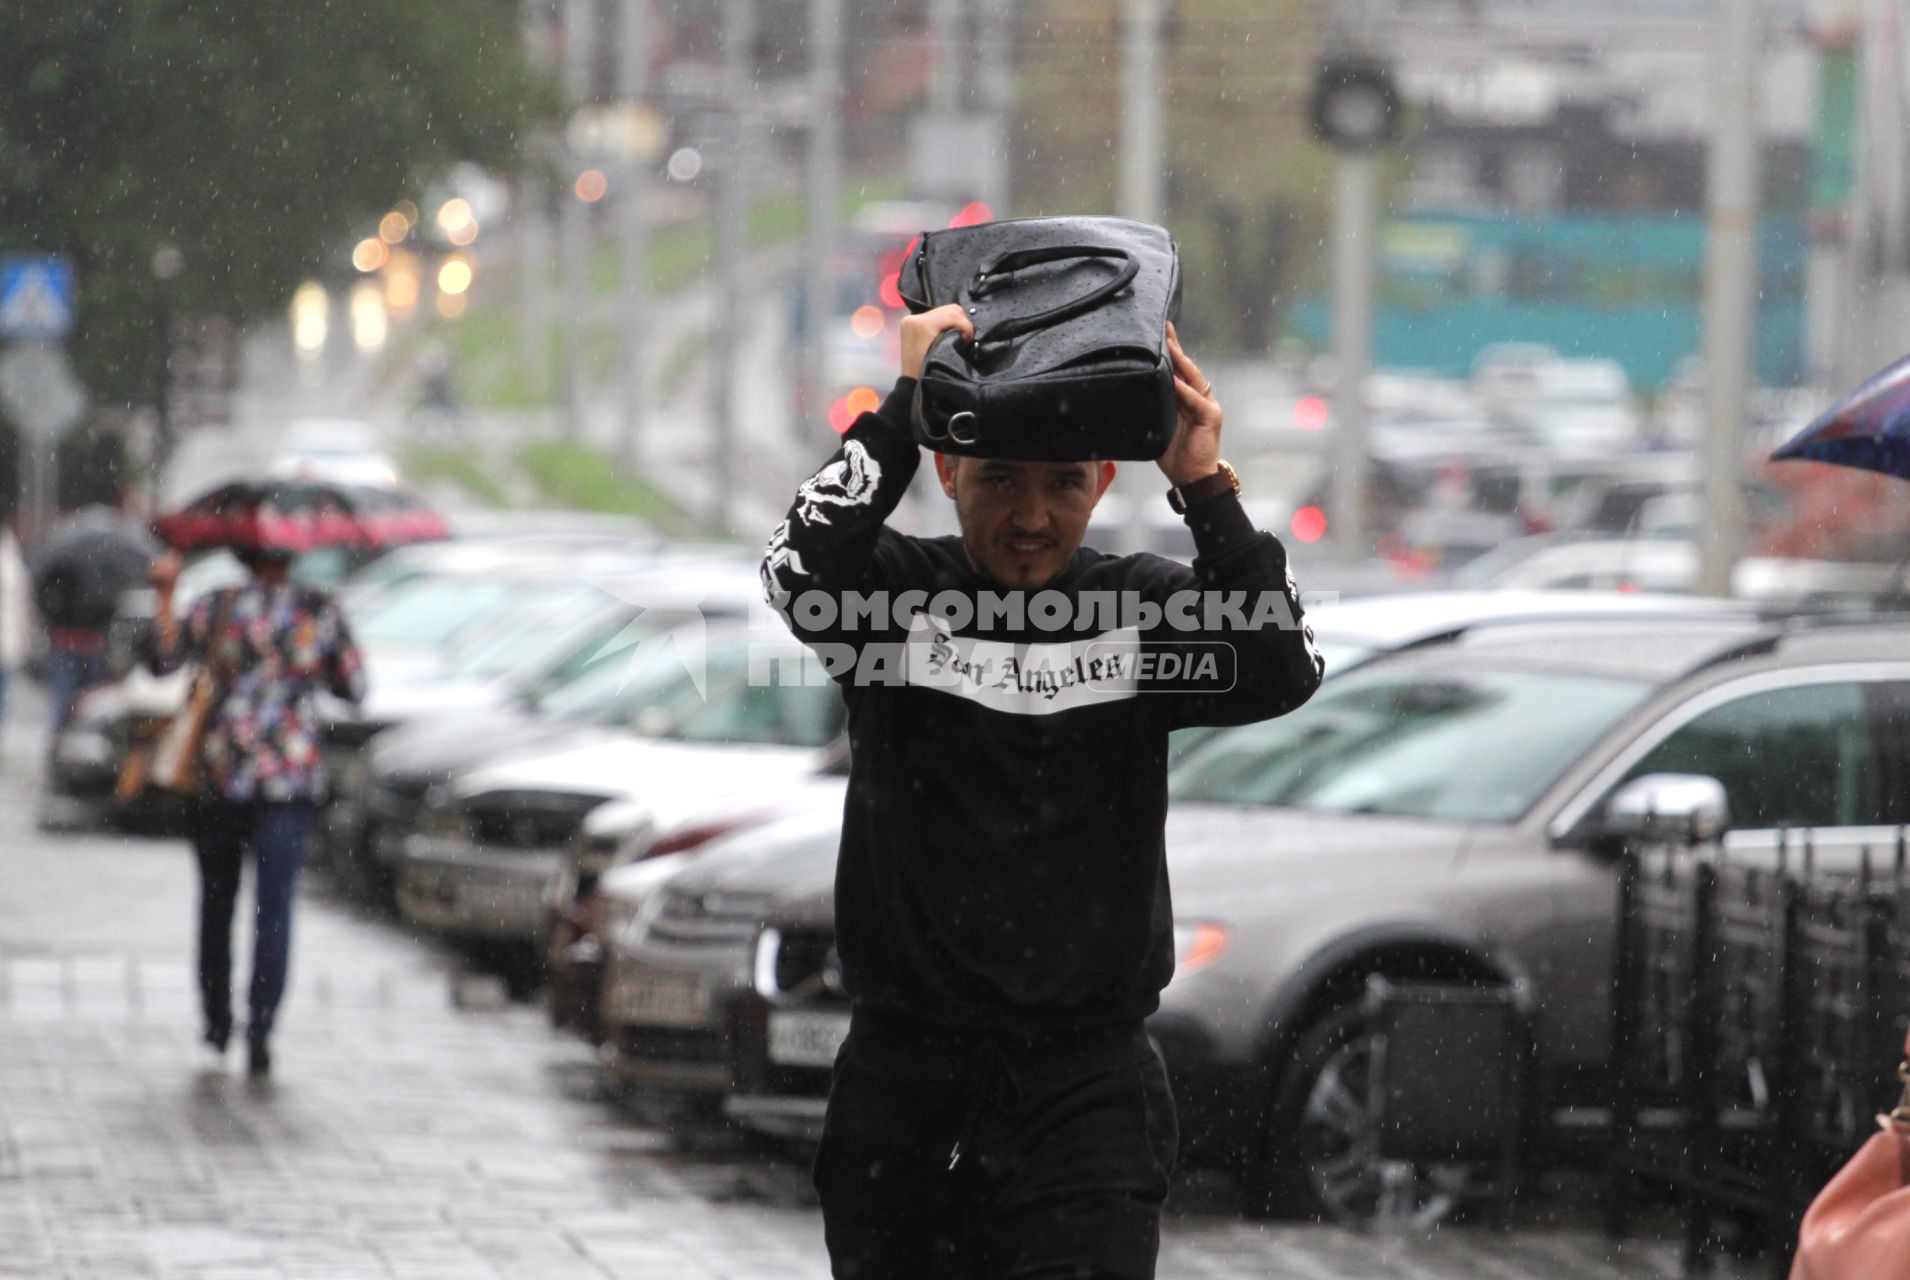 Иркутск.  Мужчина во время дождя на одной из улиц города.